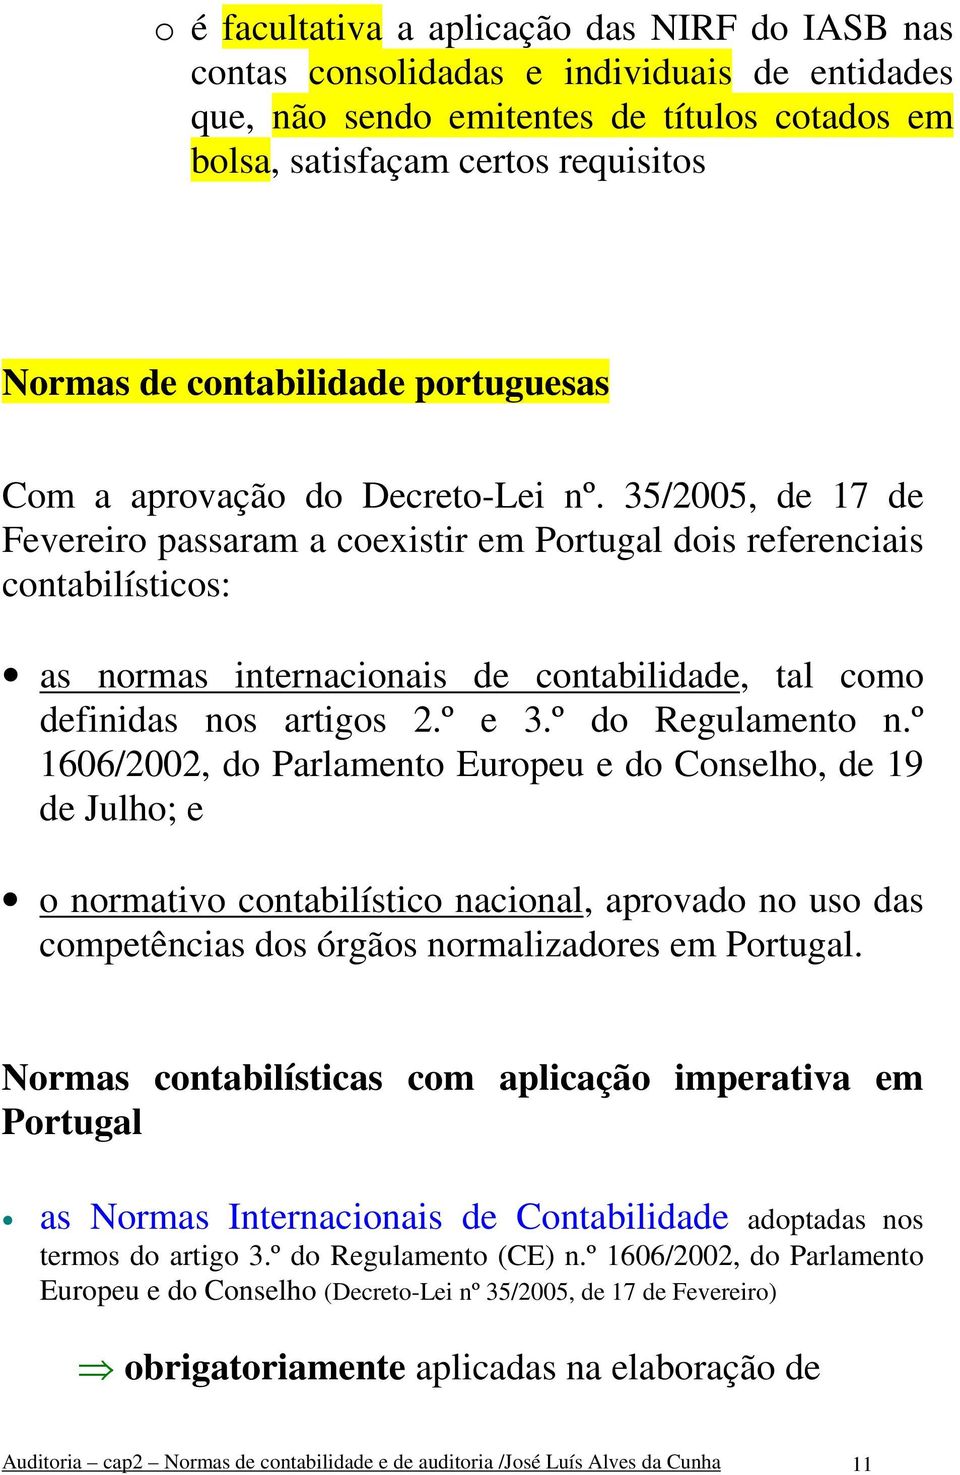 35/2005, de 17 de Fevereiro passaram a coexistir em Portugal dois referenciais contabilísticos: as normas internacionais de contabilidade, tal como definidas nos artigos 2.º e 3.º do Regulamento n.